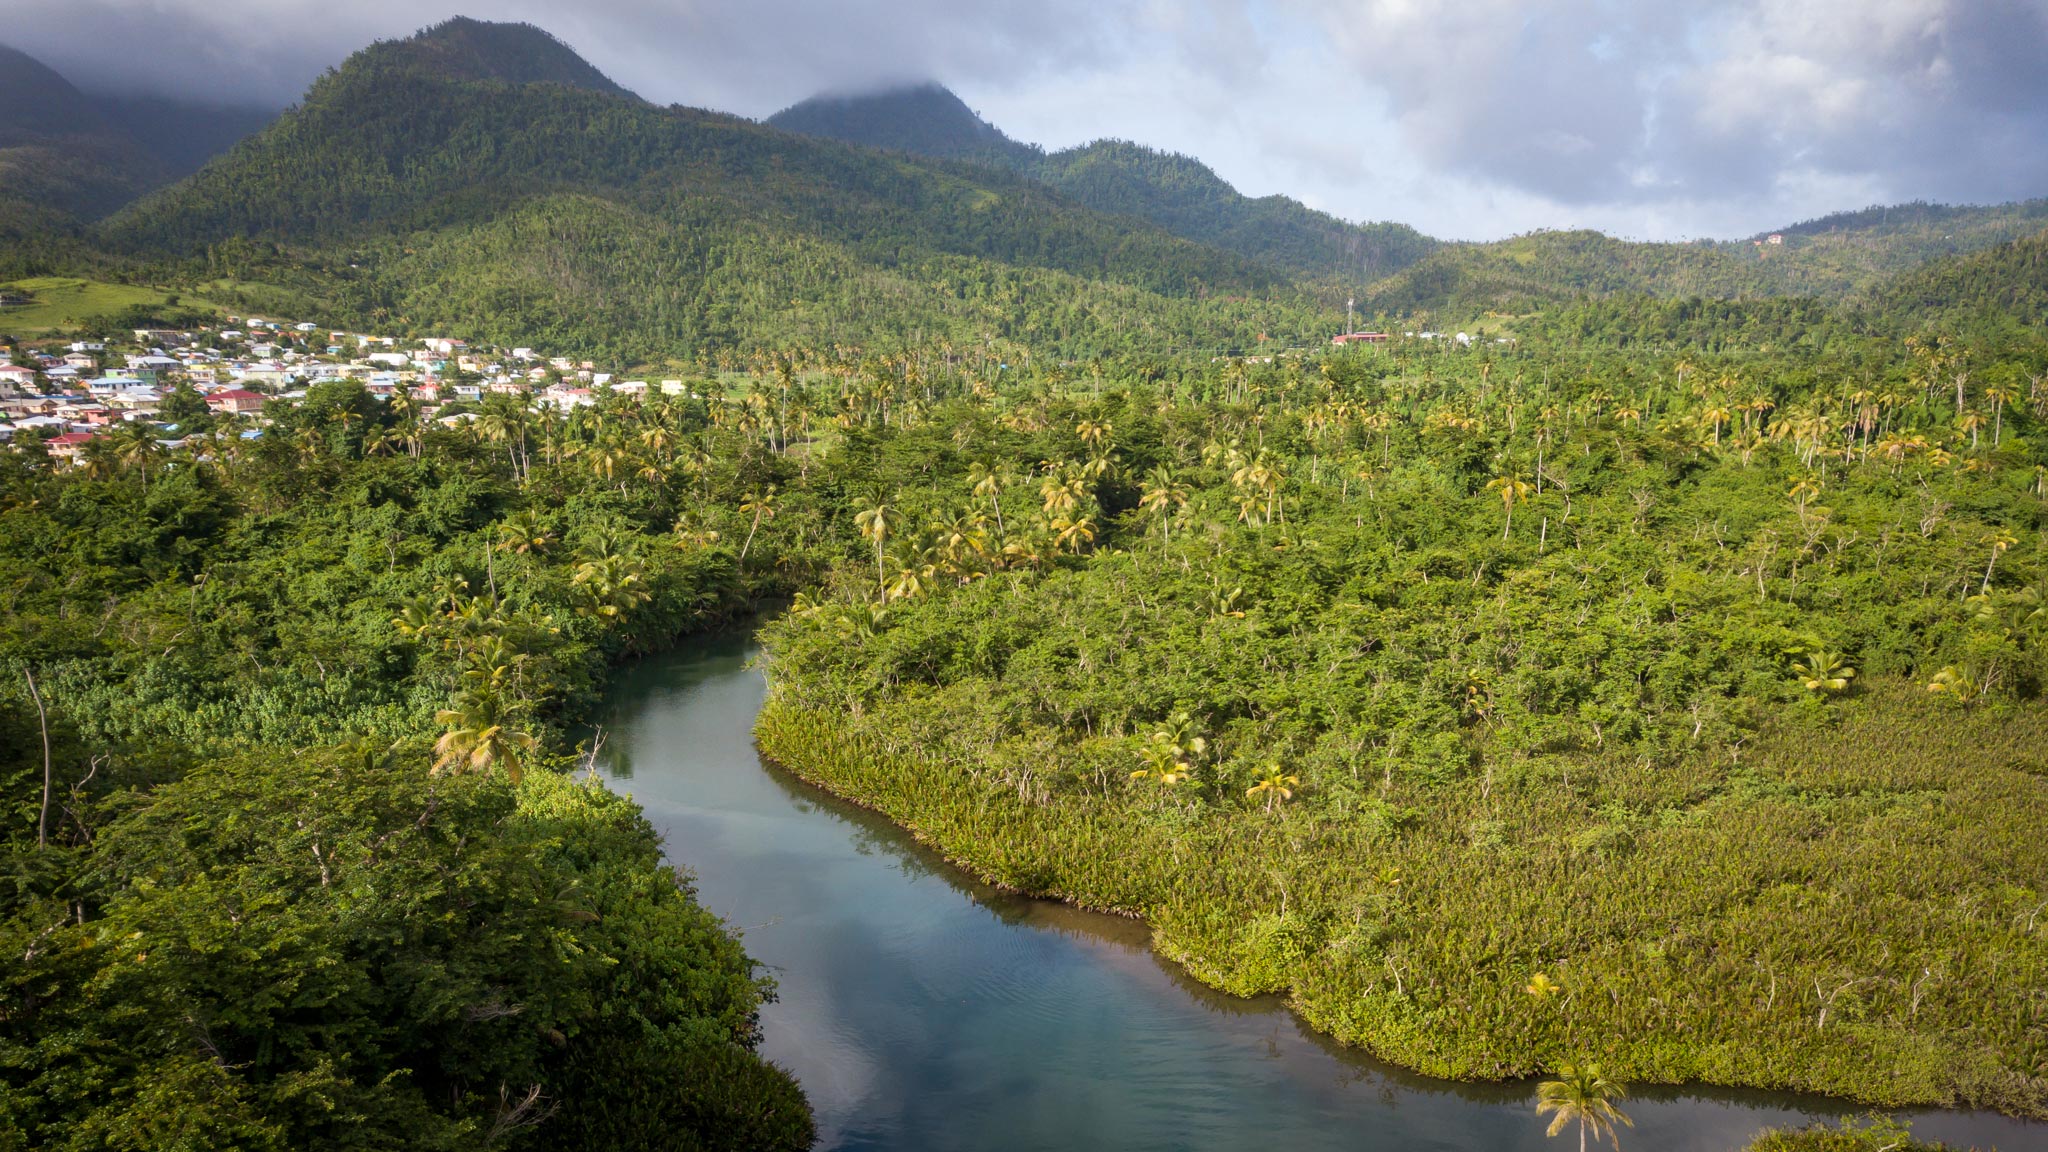 从上面看到的印度河在后台与多米尼加的山脉